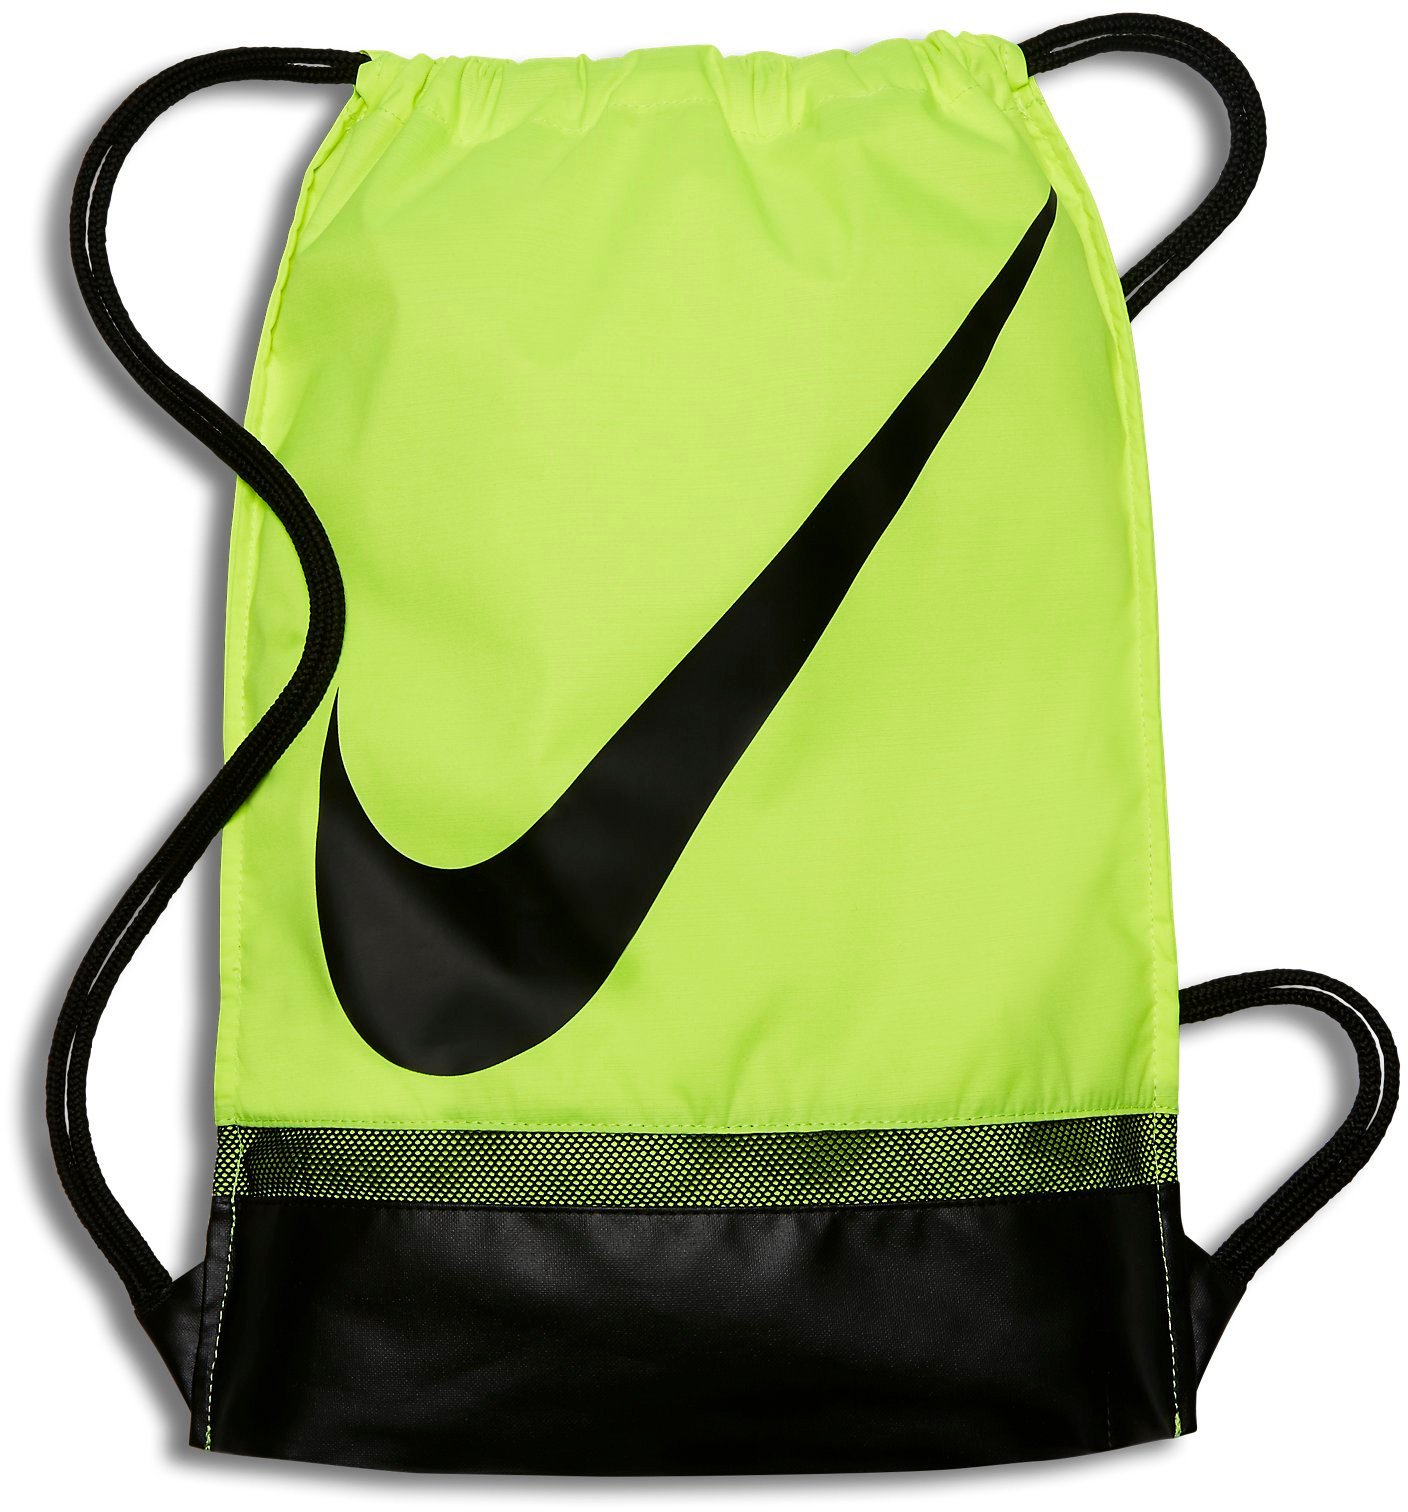 Gymsack Nike Allegiance Football